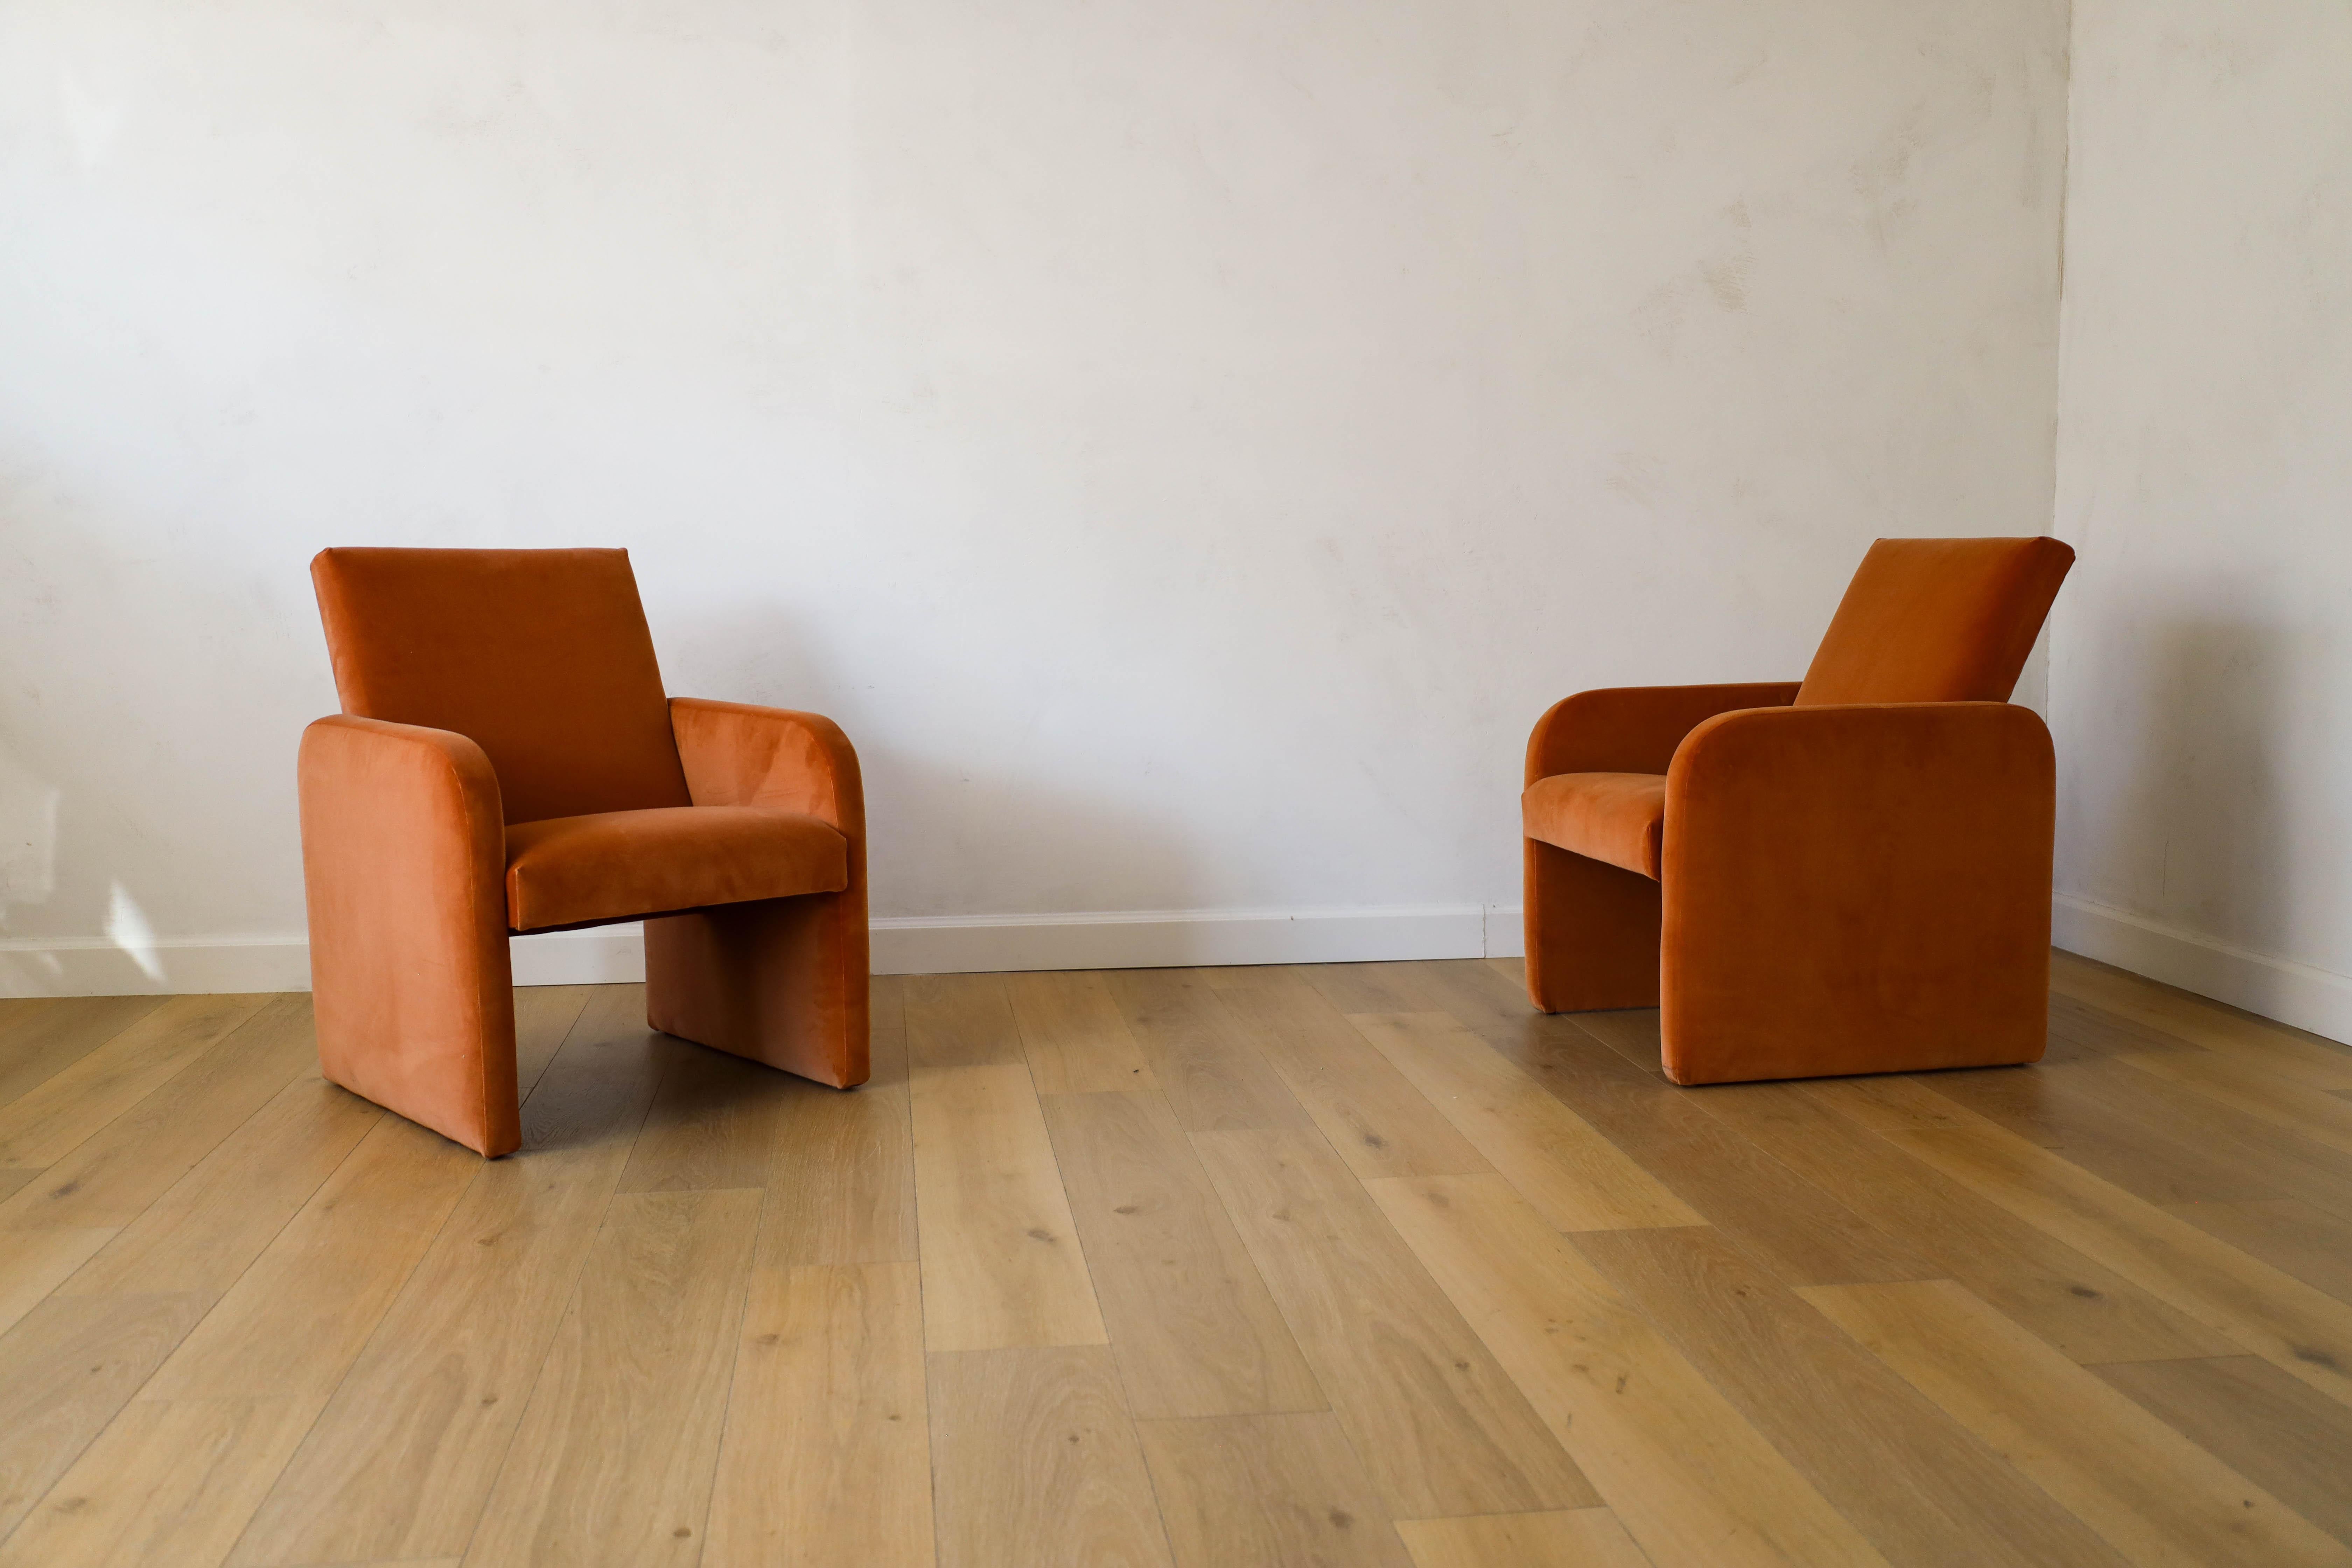 Superbe ensemble de chaises postmodernes provenant d'un hôtel de charme à Prague, dans les années 1970. La paire a été réimaginée dans un magnifique revêtement en velours, offrant des tons roses et orange variant selon la chaleur de la pièce. Donnez